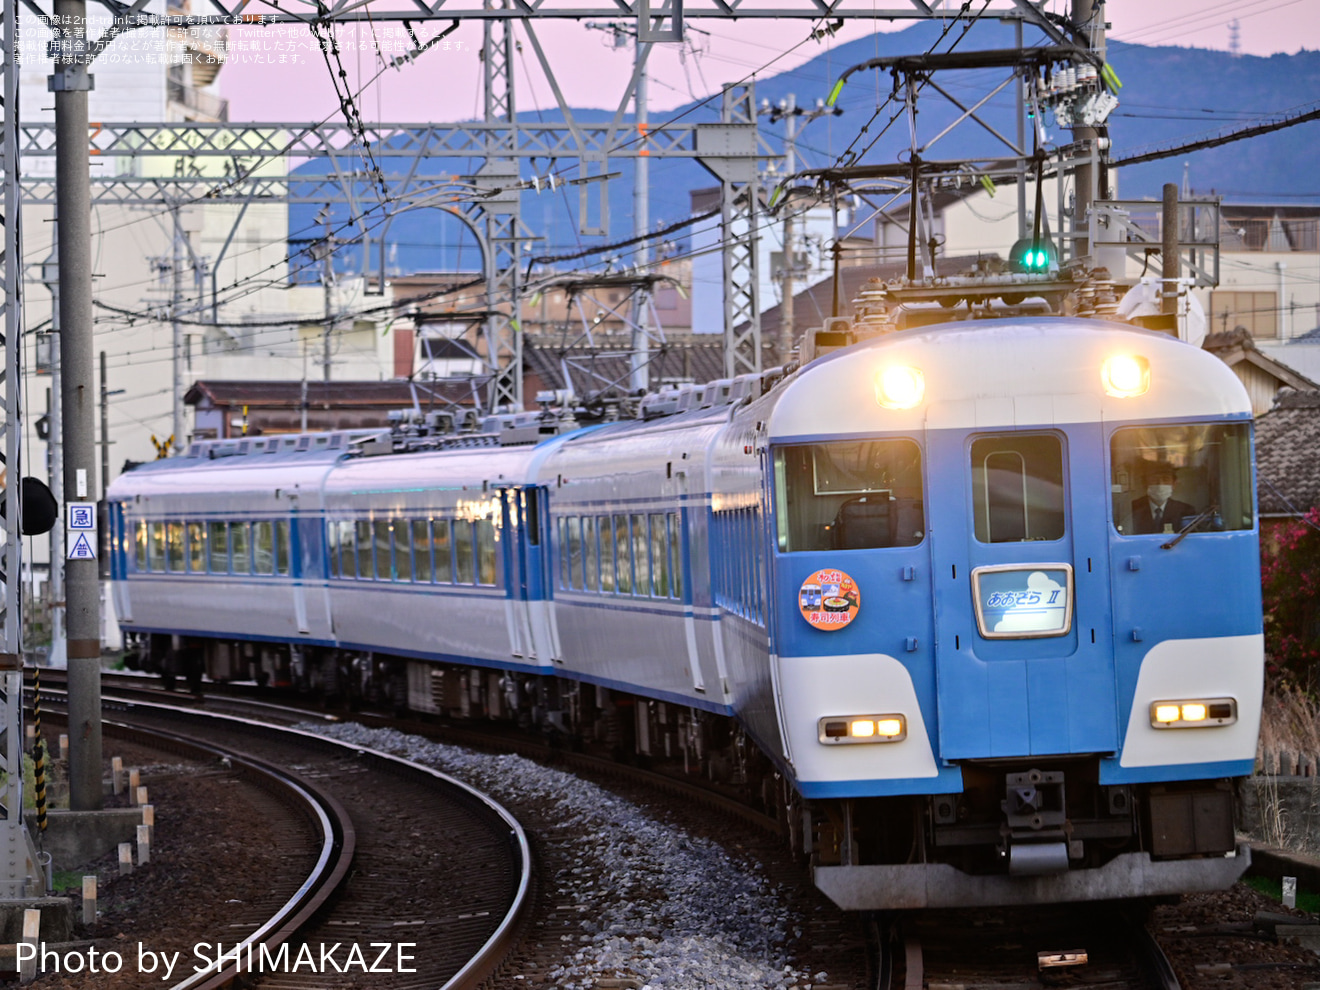 【近鉄】あおぞらⅡ使用「寿司列車で行く伊勢神宮初詣」ツアーを催行の拡大写真